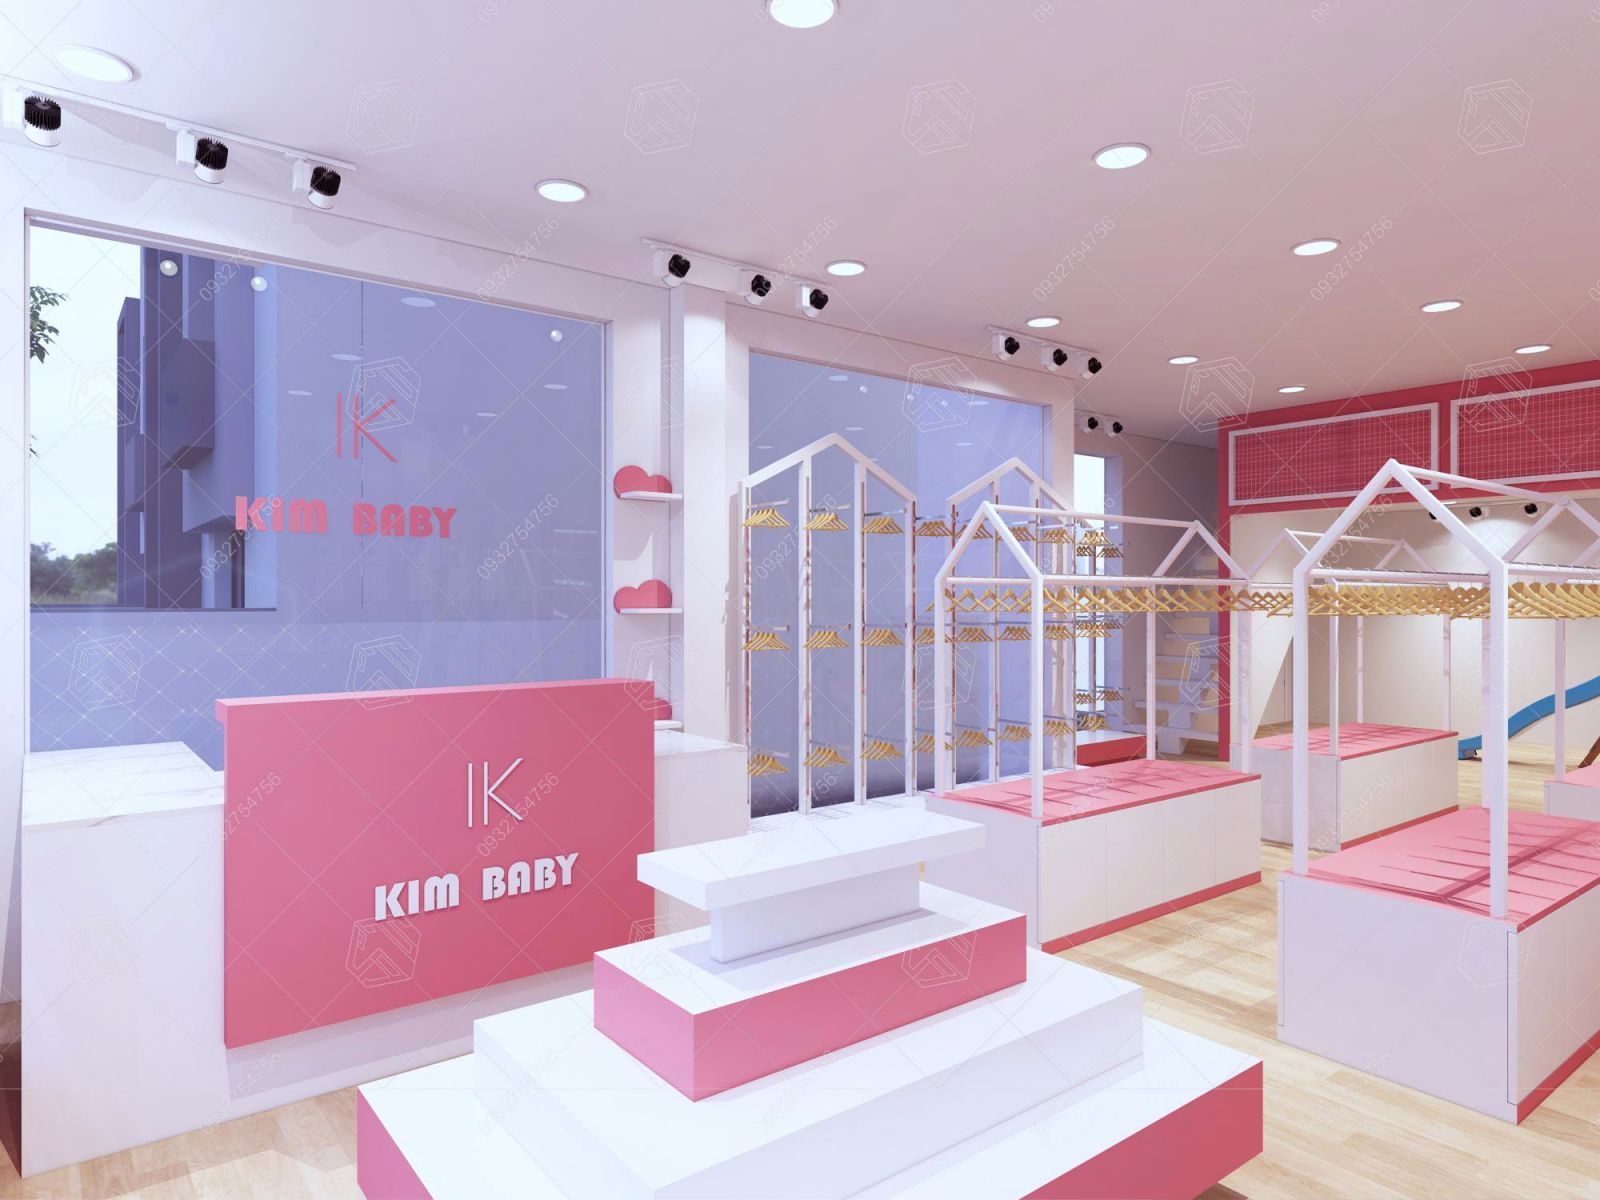 mẫu thiết kế shop thời trang KimBaby